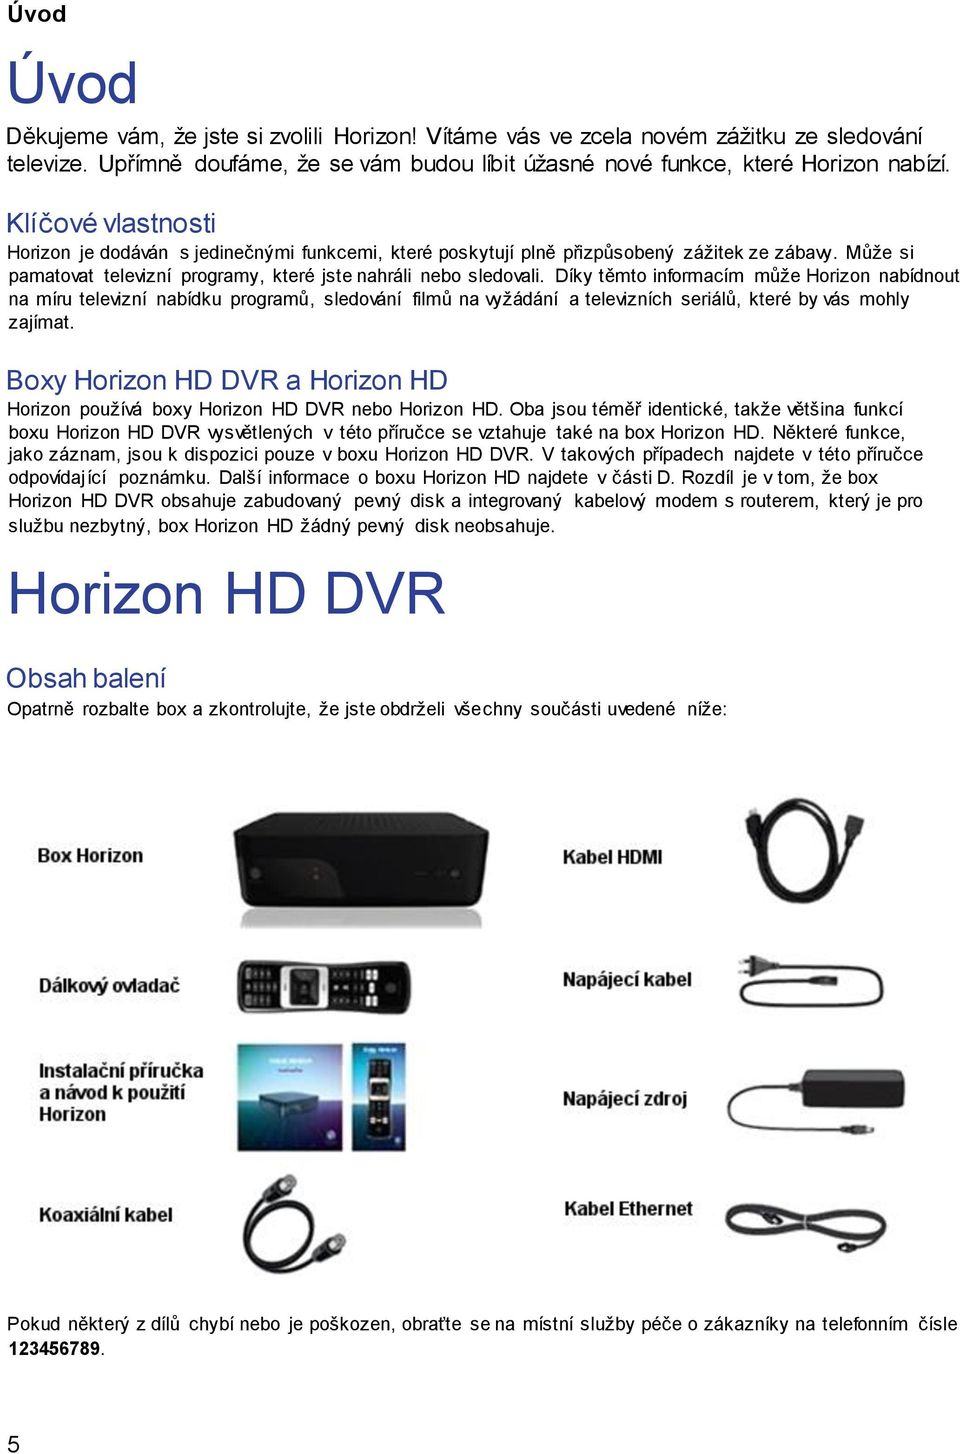 Díky těmto informacím může Horizon nabídnout na míru televizní nabídku programů, sledování filmů na vyžádání a televizních seriálů, které by vás mohly zajímat.